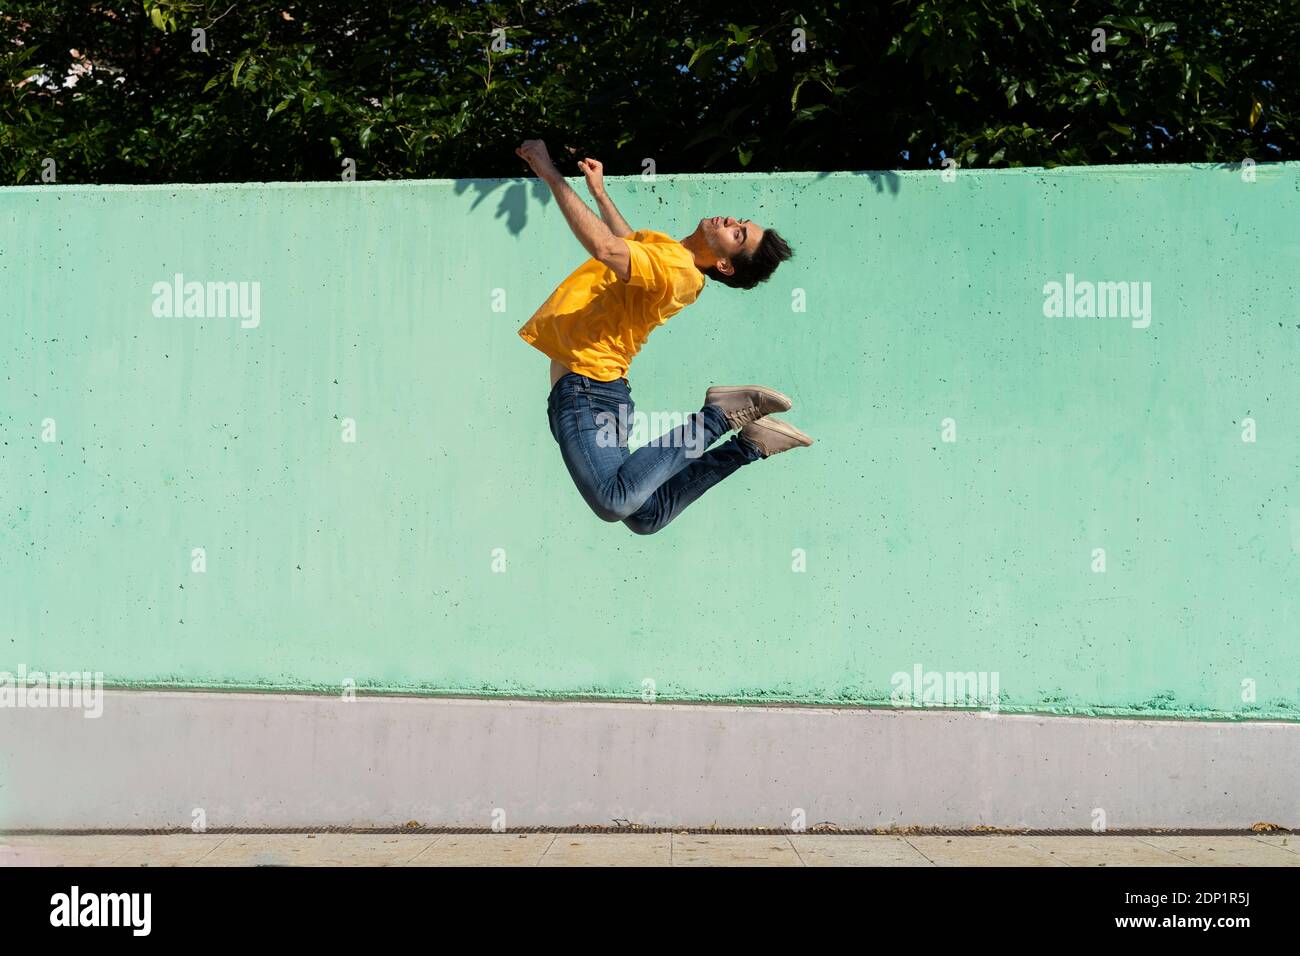 Mann springt mitten in der Luft vor der grünen Wand Stockfoto